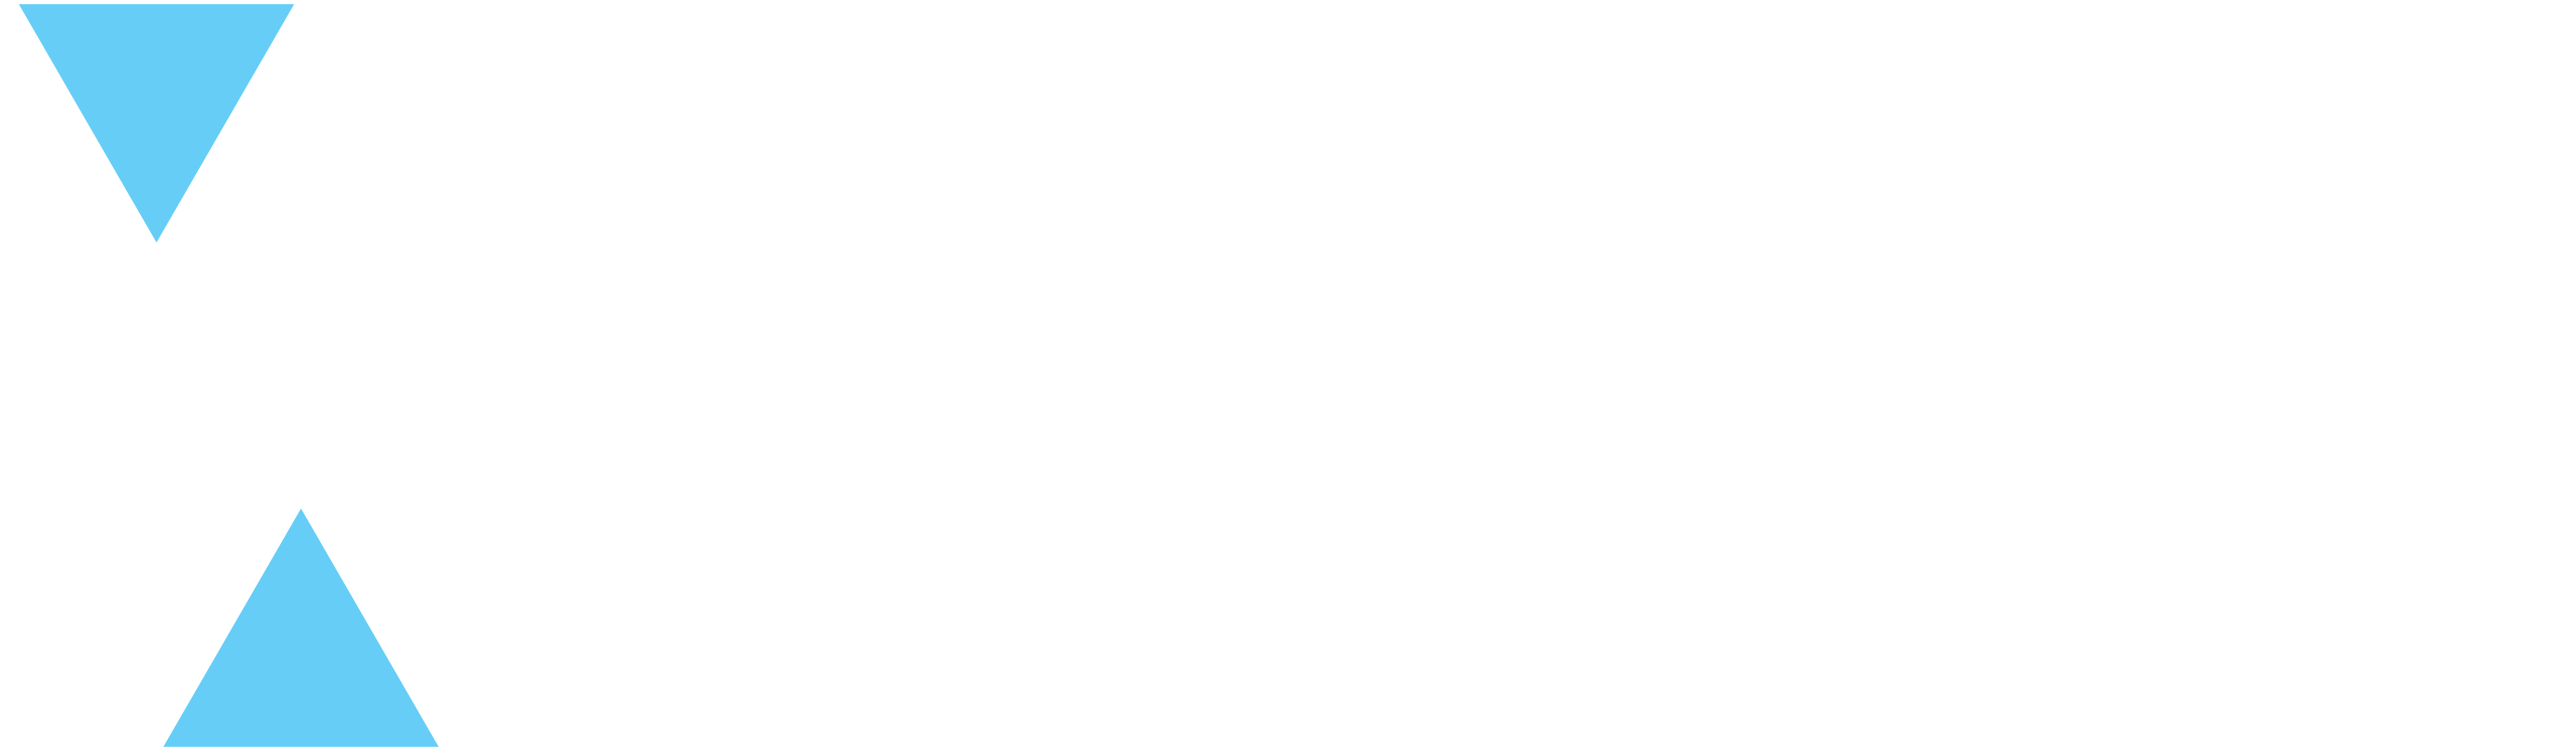 Zentalis logo